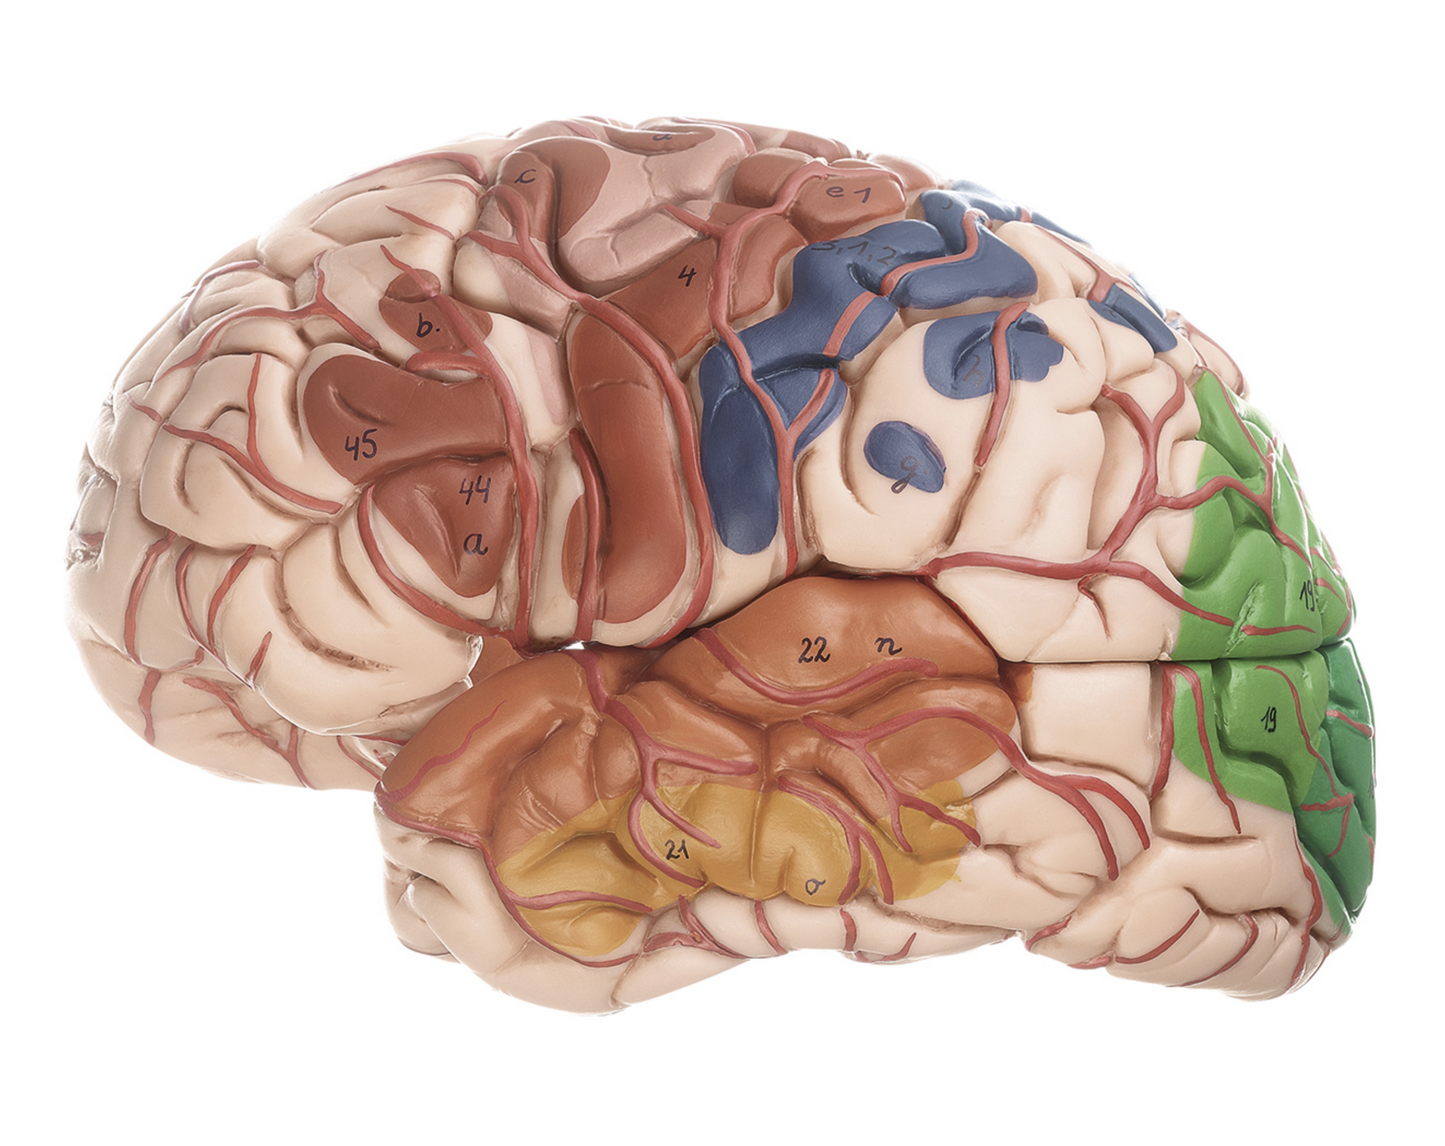 Avanceret hjernemodel med arterier, farvemarkeringer, hjernehinder mm.